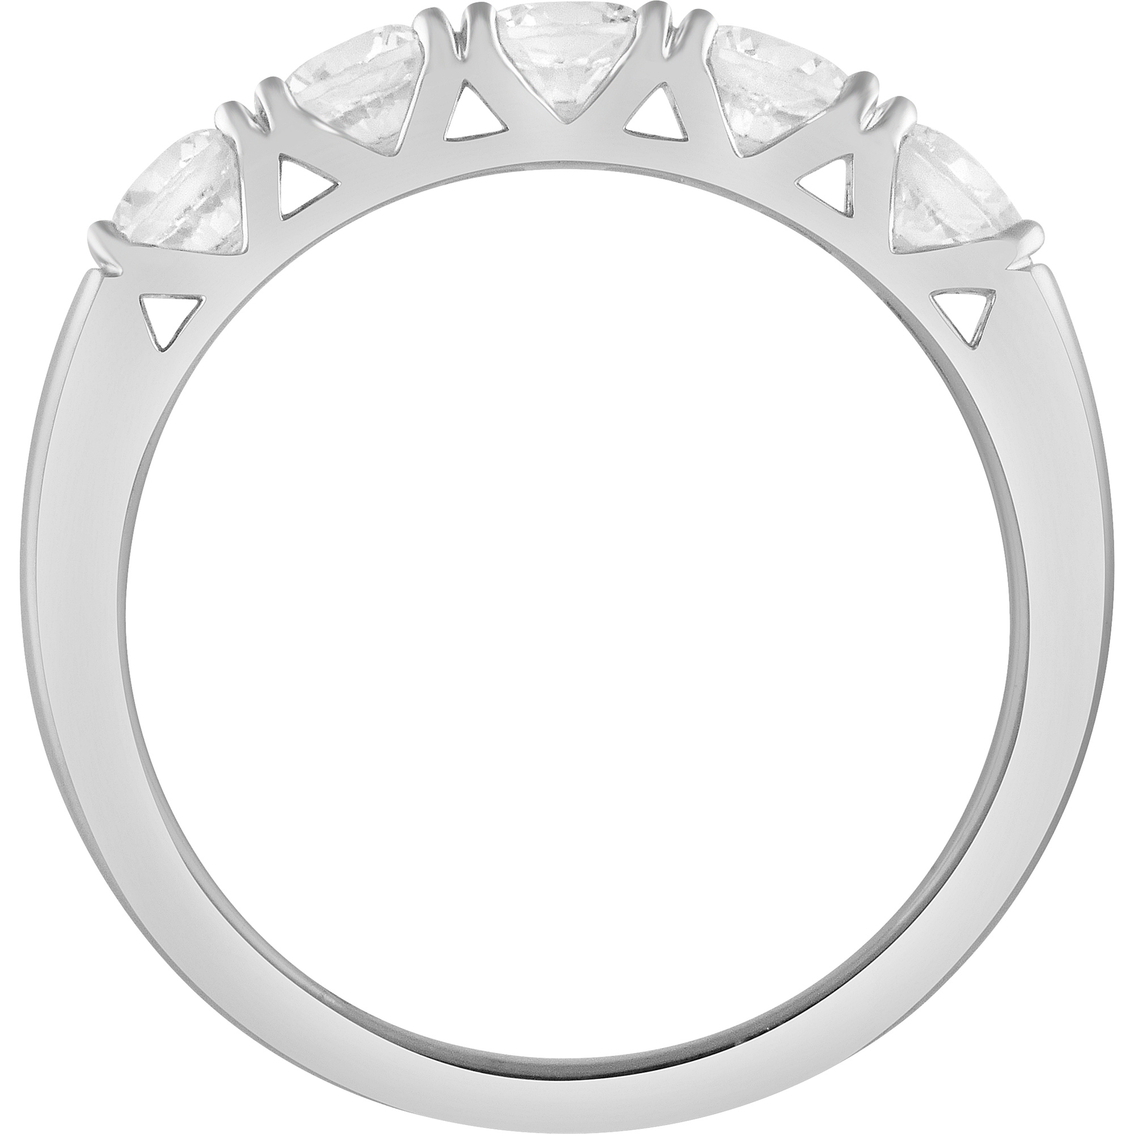 10K White Gold 1 CTW 5 Stone Round Diamond Anniversary Ring - Image 2 of 3